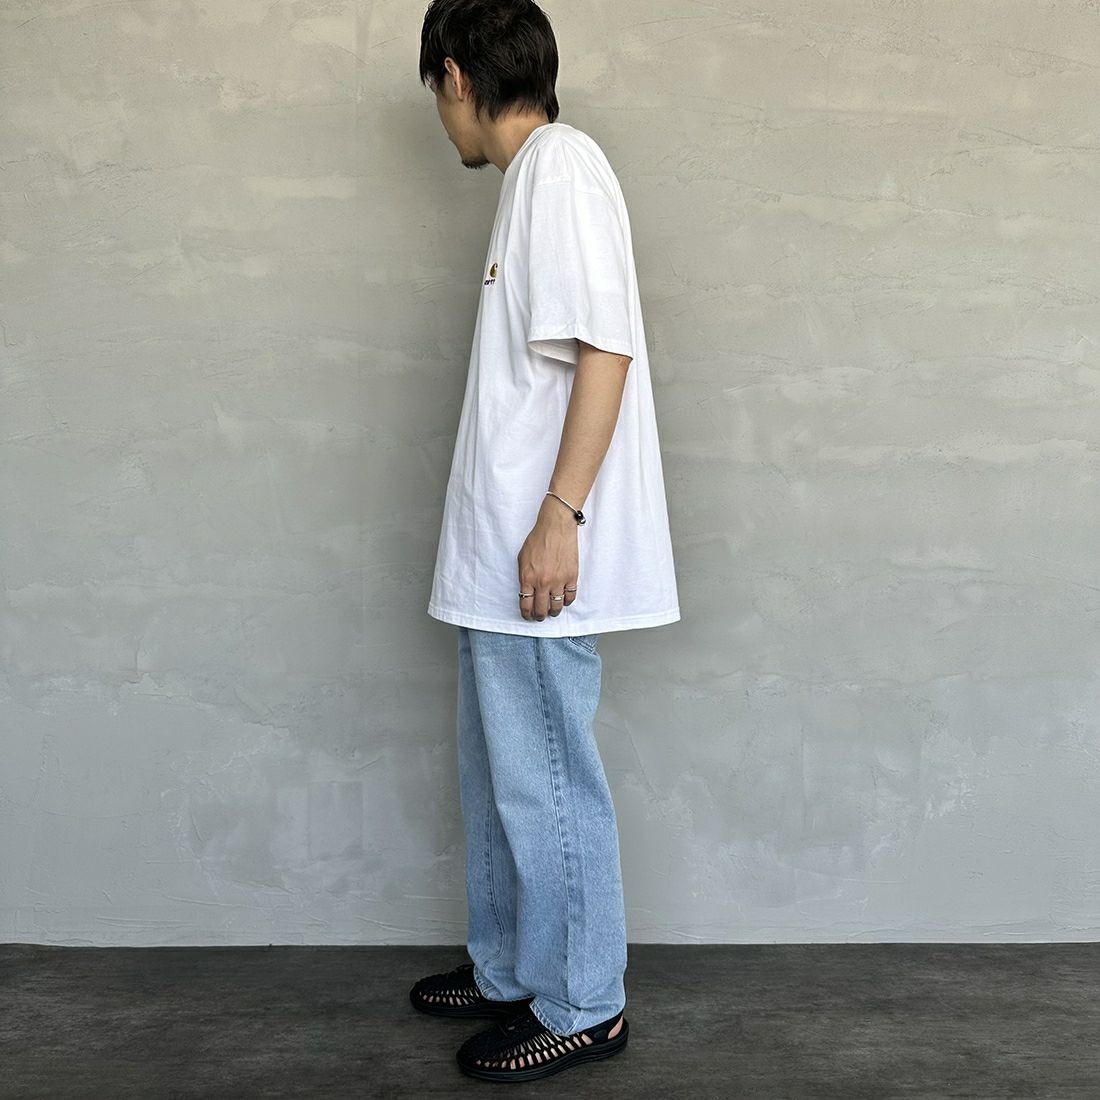 carhartt WIP [カーハートダブリューアイピー] ショートスリーブアメリカンスクリプトTシャツ [I029956] WHITE &&モデル身長：173cm 着用サイズ：L&&